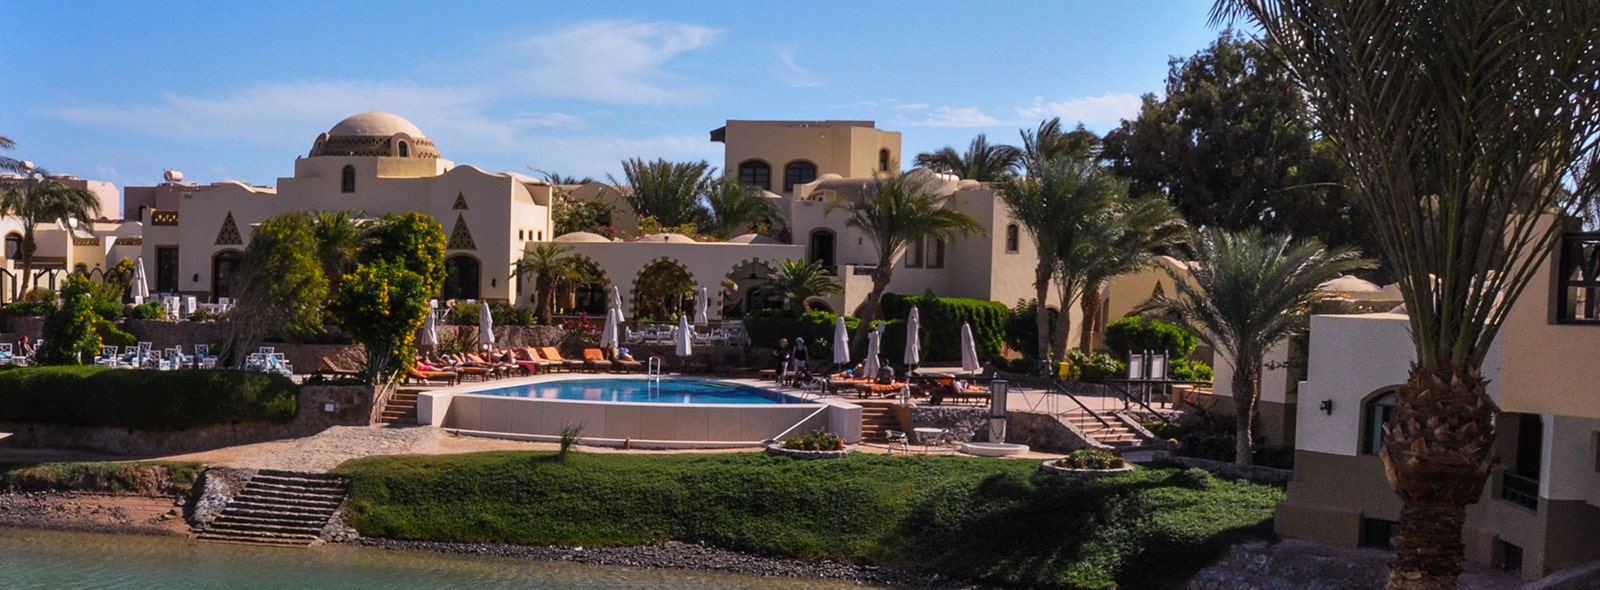 Bienvenue à l’hôtel Dawar sur le spot de El Gouna pour votre prochain séjour kitesurf